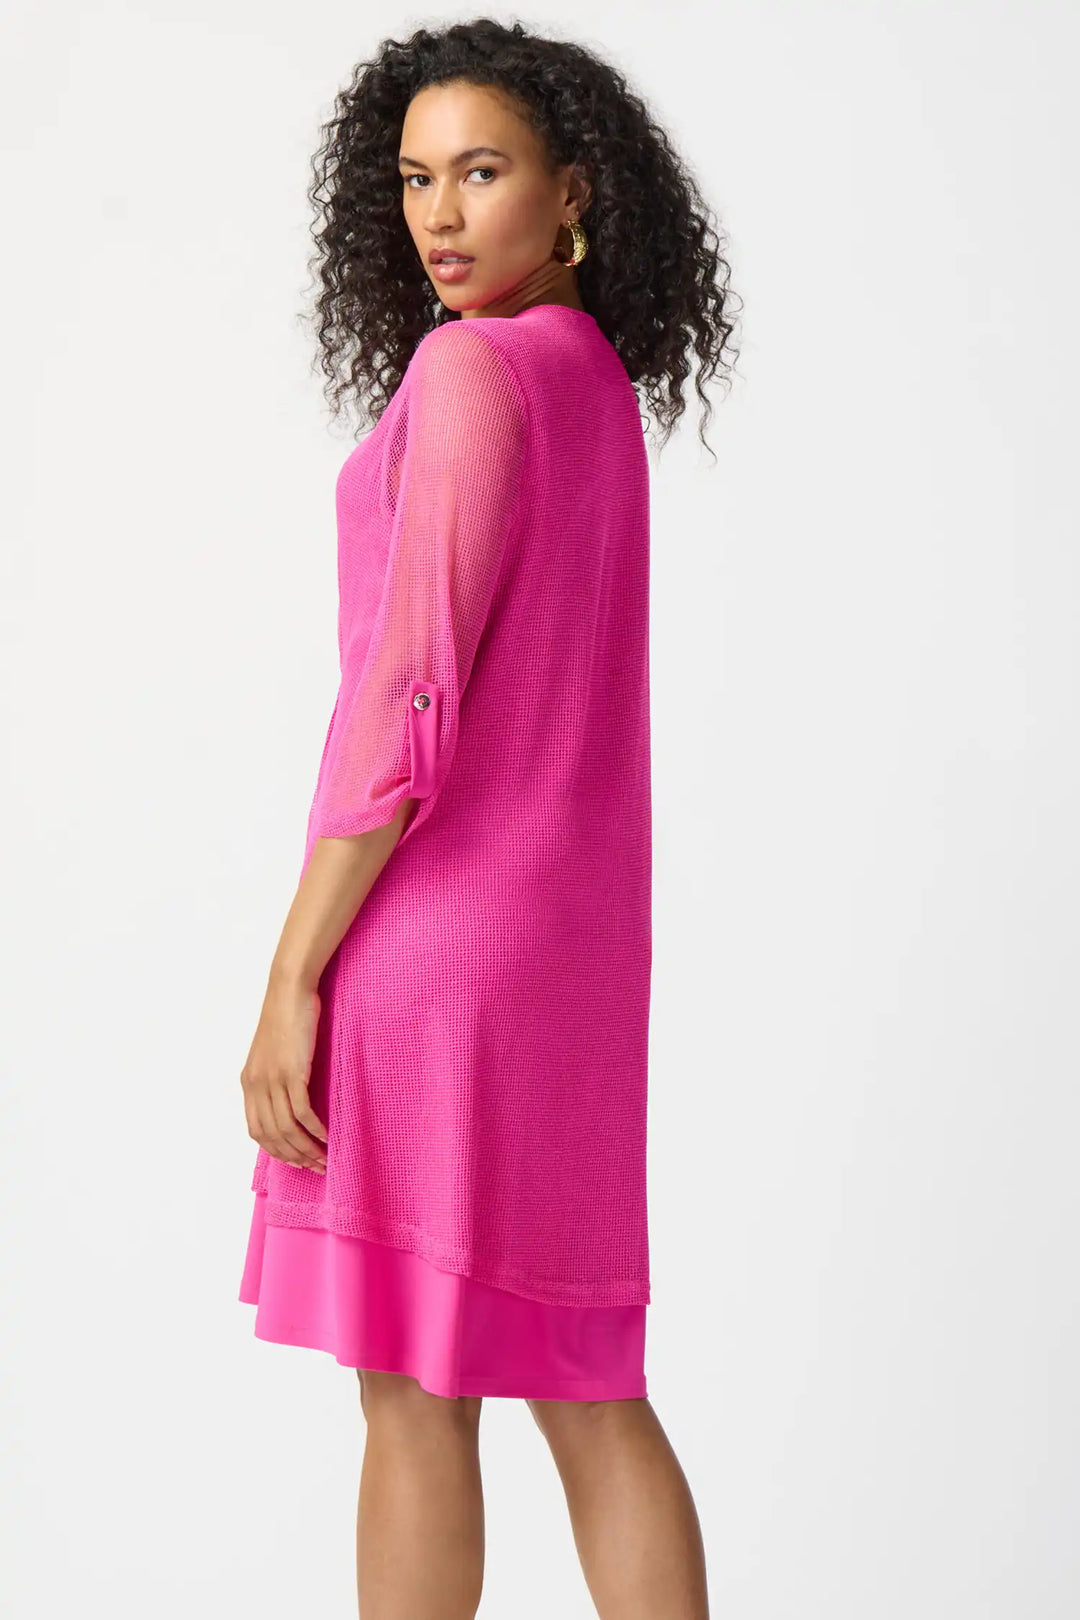 "Joseph Ribkoff Ultra Pink Layered Dress Style 24115"